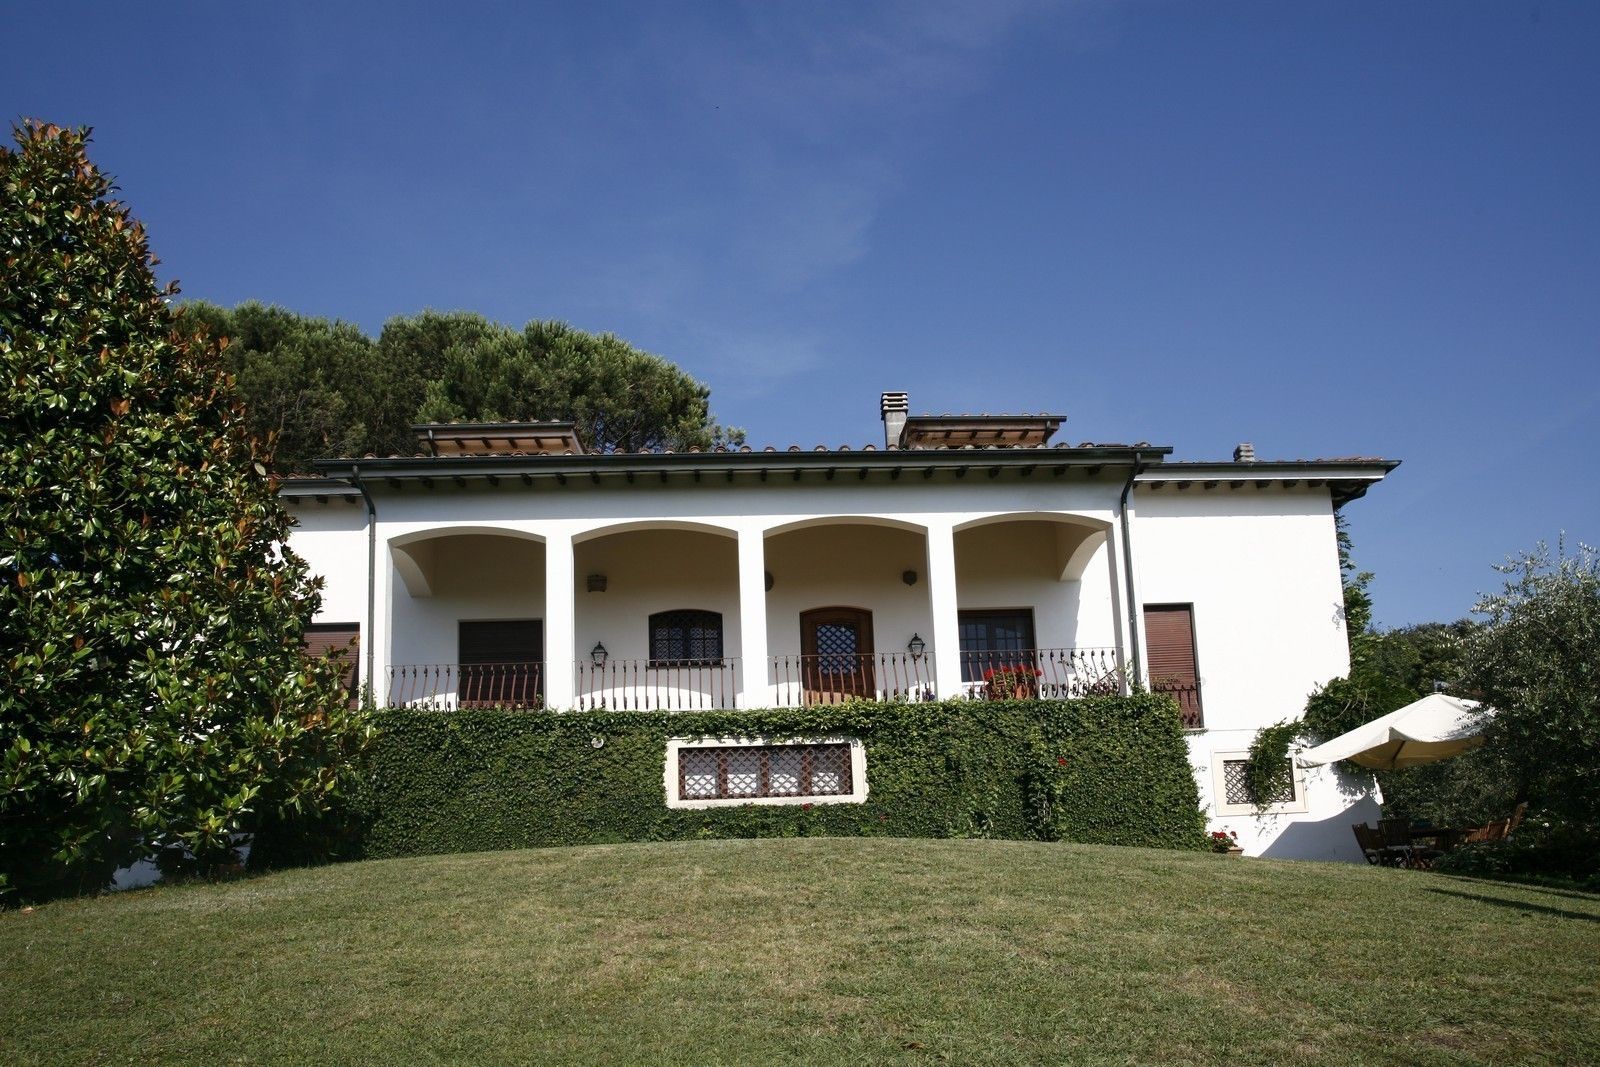 Villa Forabosco 2, Studio Tecnico Fanucchi Studio Tecnico Fanucchi Classic style houses